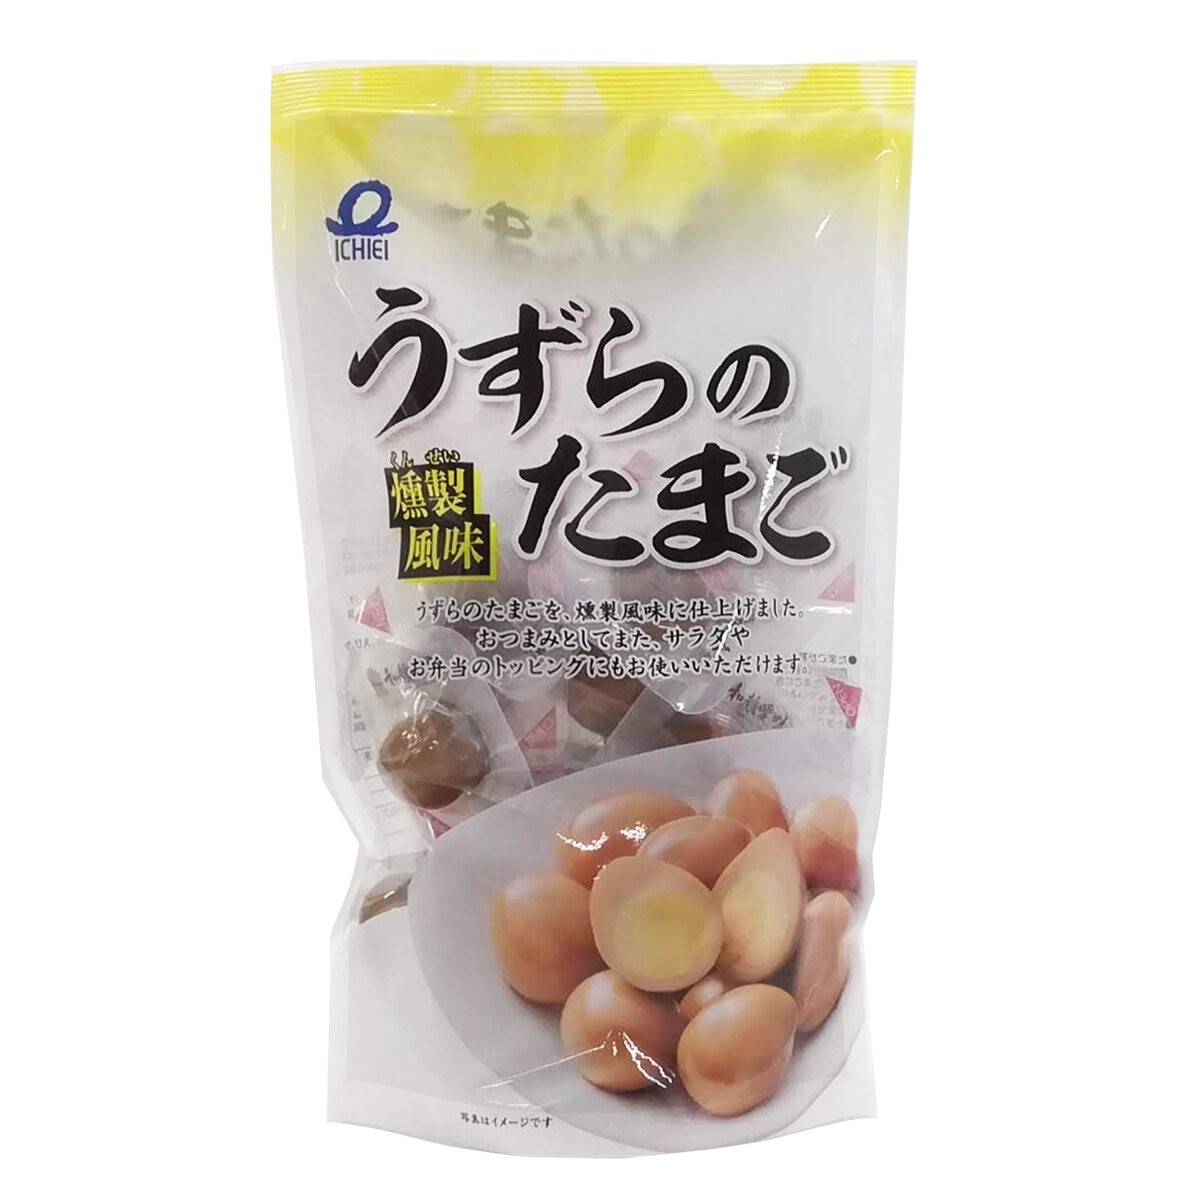 うずらのたまご燻製風味 | Costco Japan